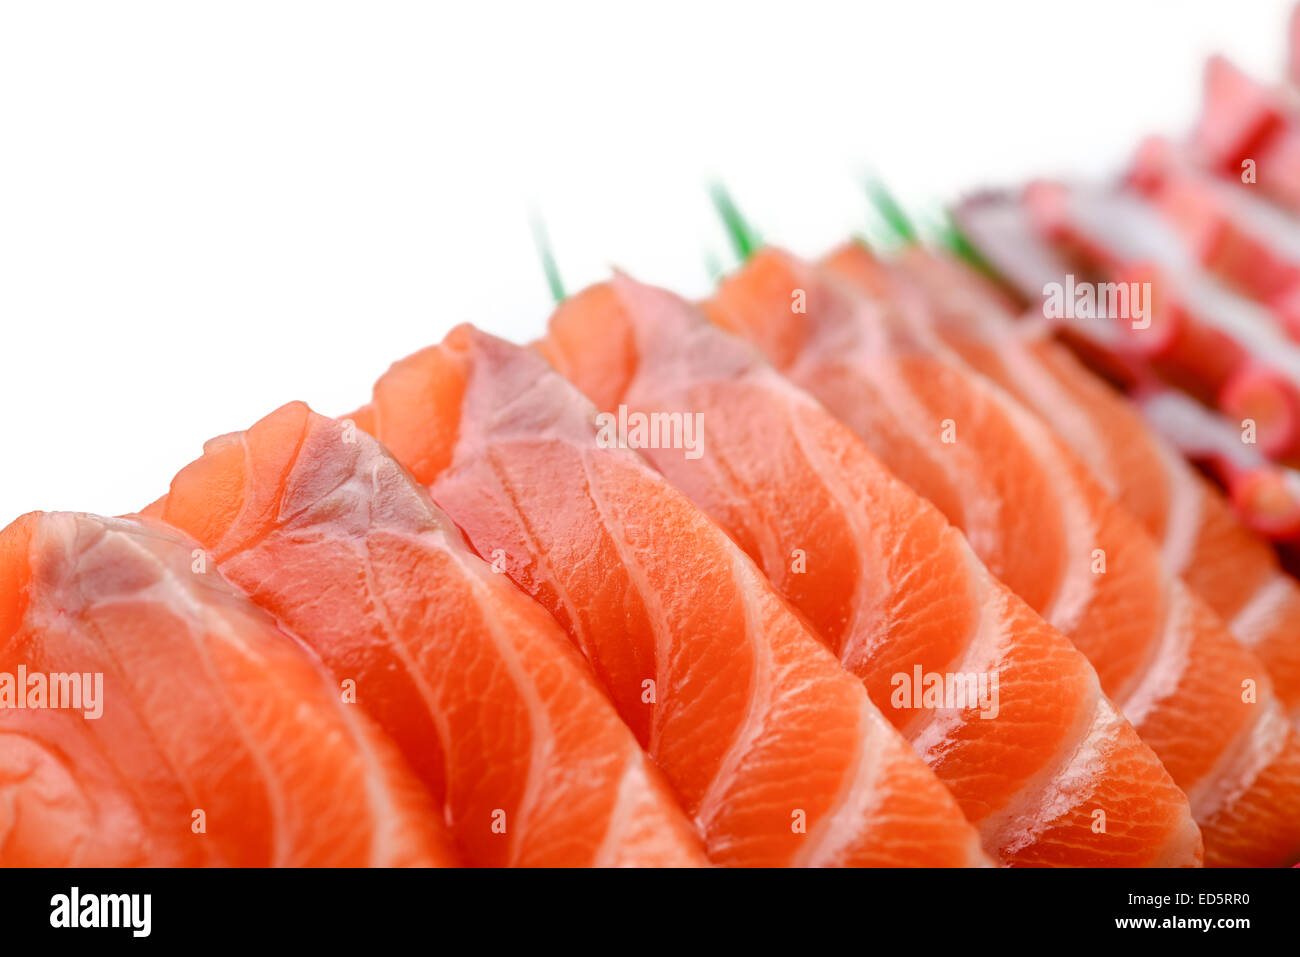 japanese food sushi salmon fish Stock Photo